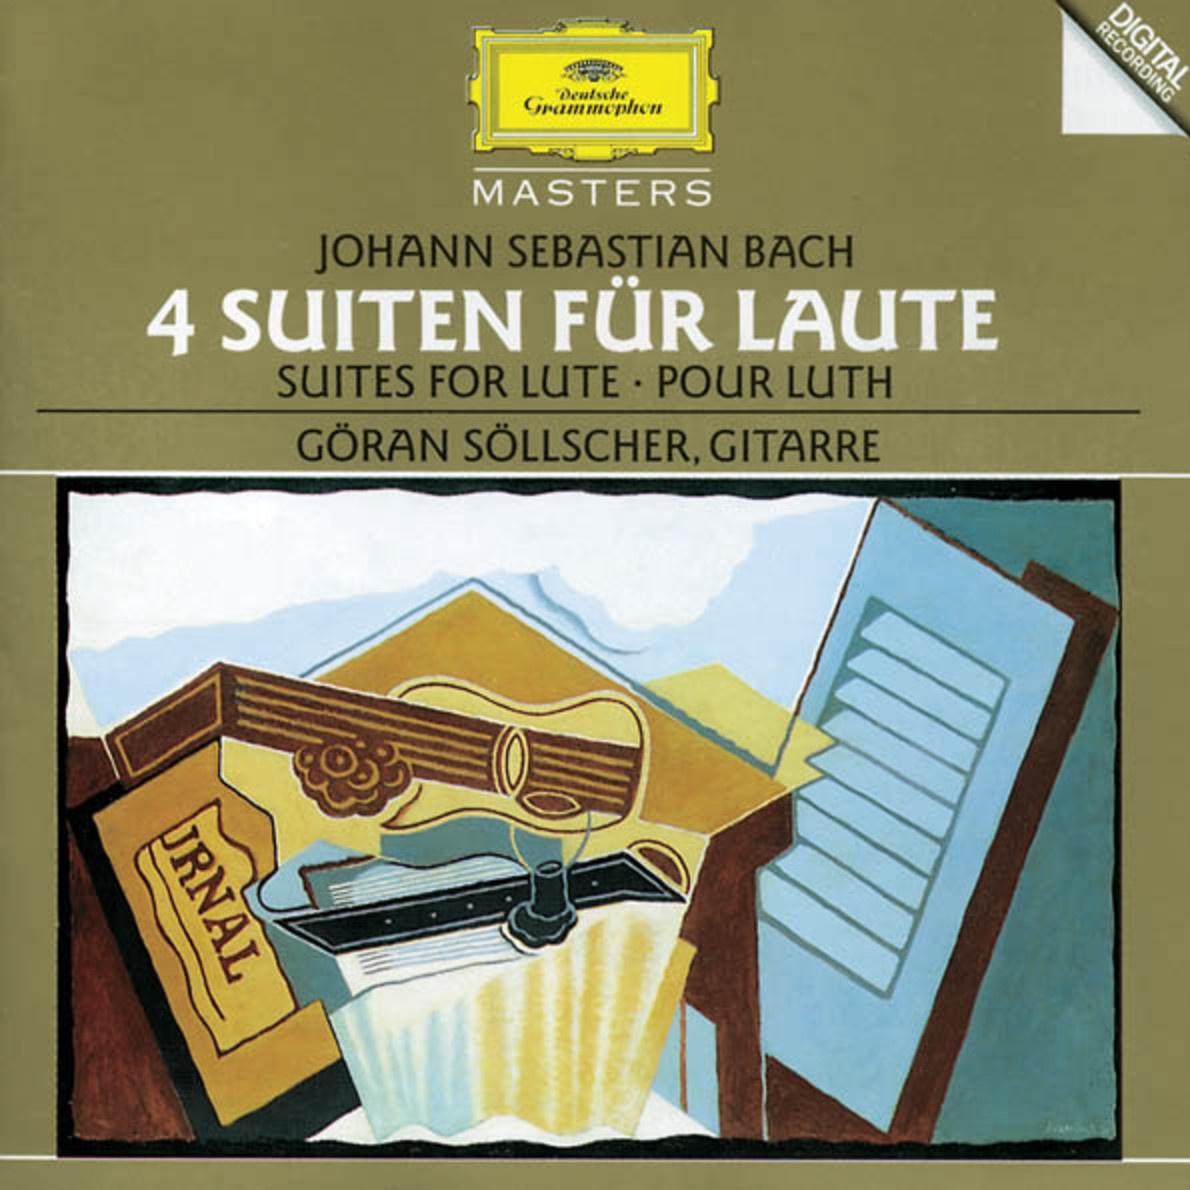 Suite in E flat major, BWV 1006a - Gavotte en Rondeau